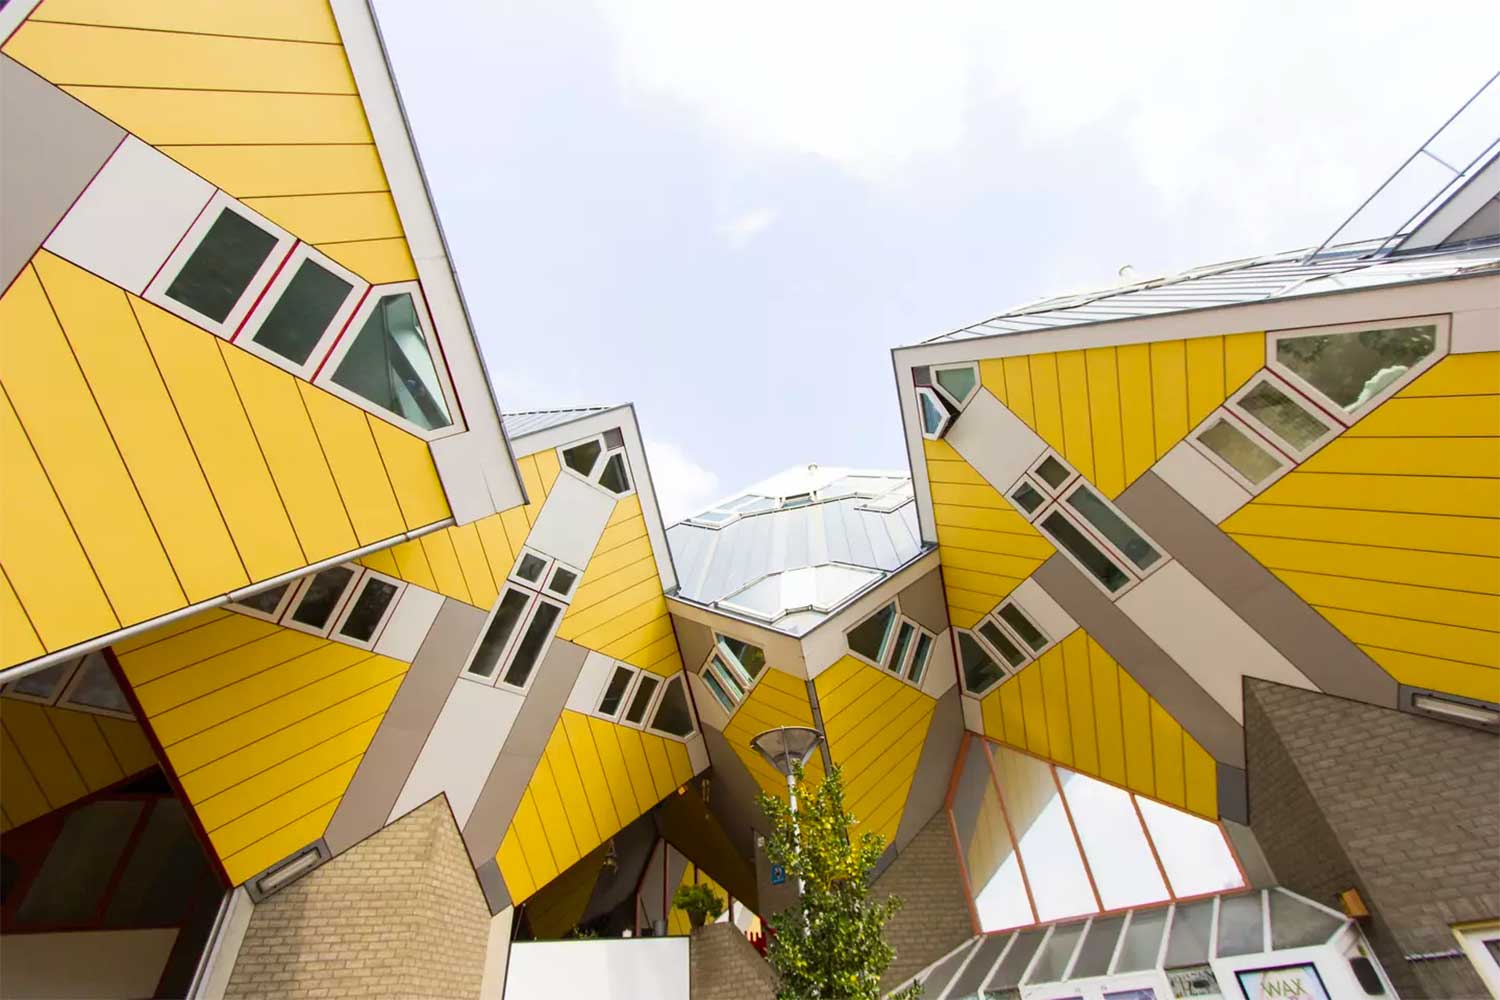 Kubuswoningen by Piet Blom, Rotterdam